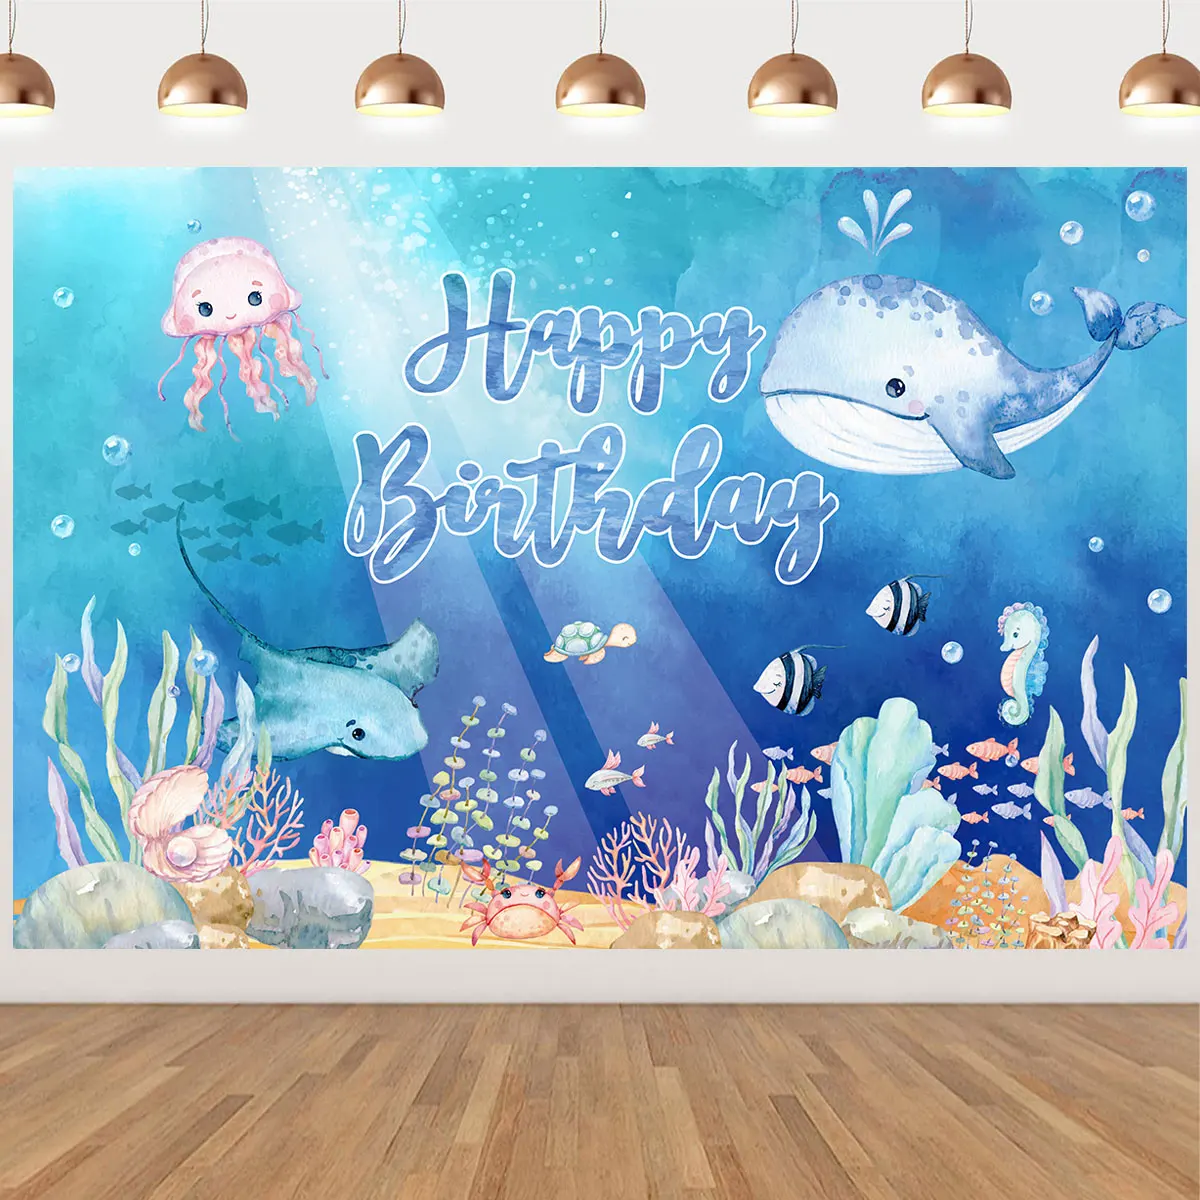 Pod  moře backdrop št'astný narozeniny večírek dekorace děti narozeniny večírek dekorace oceán bázeň narozeniny děťátko sprcha dekorace